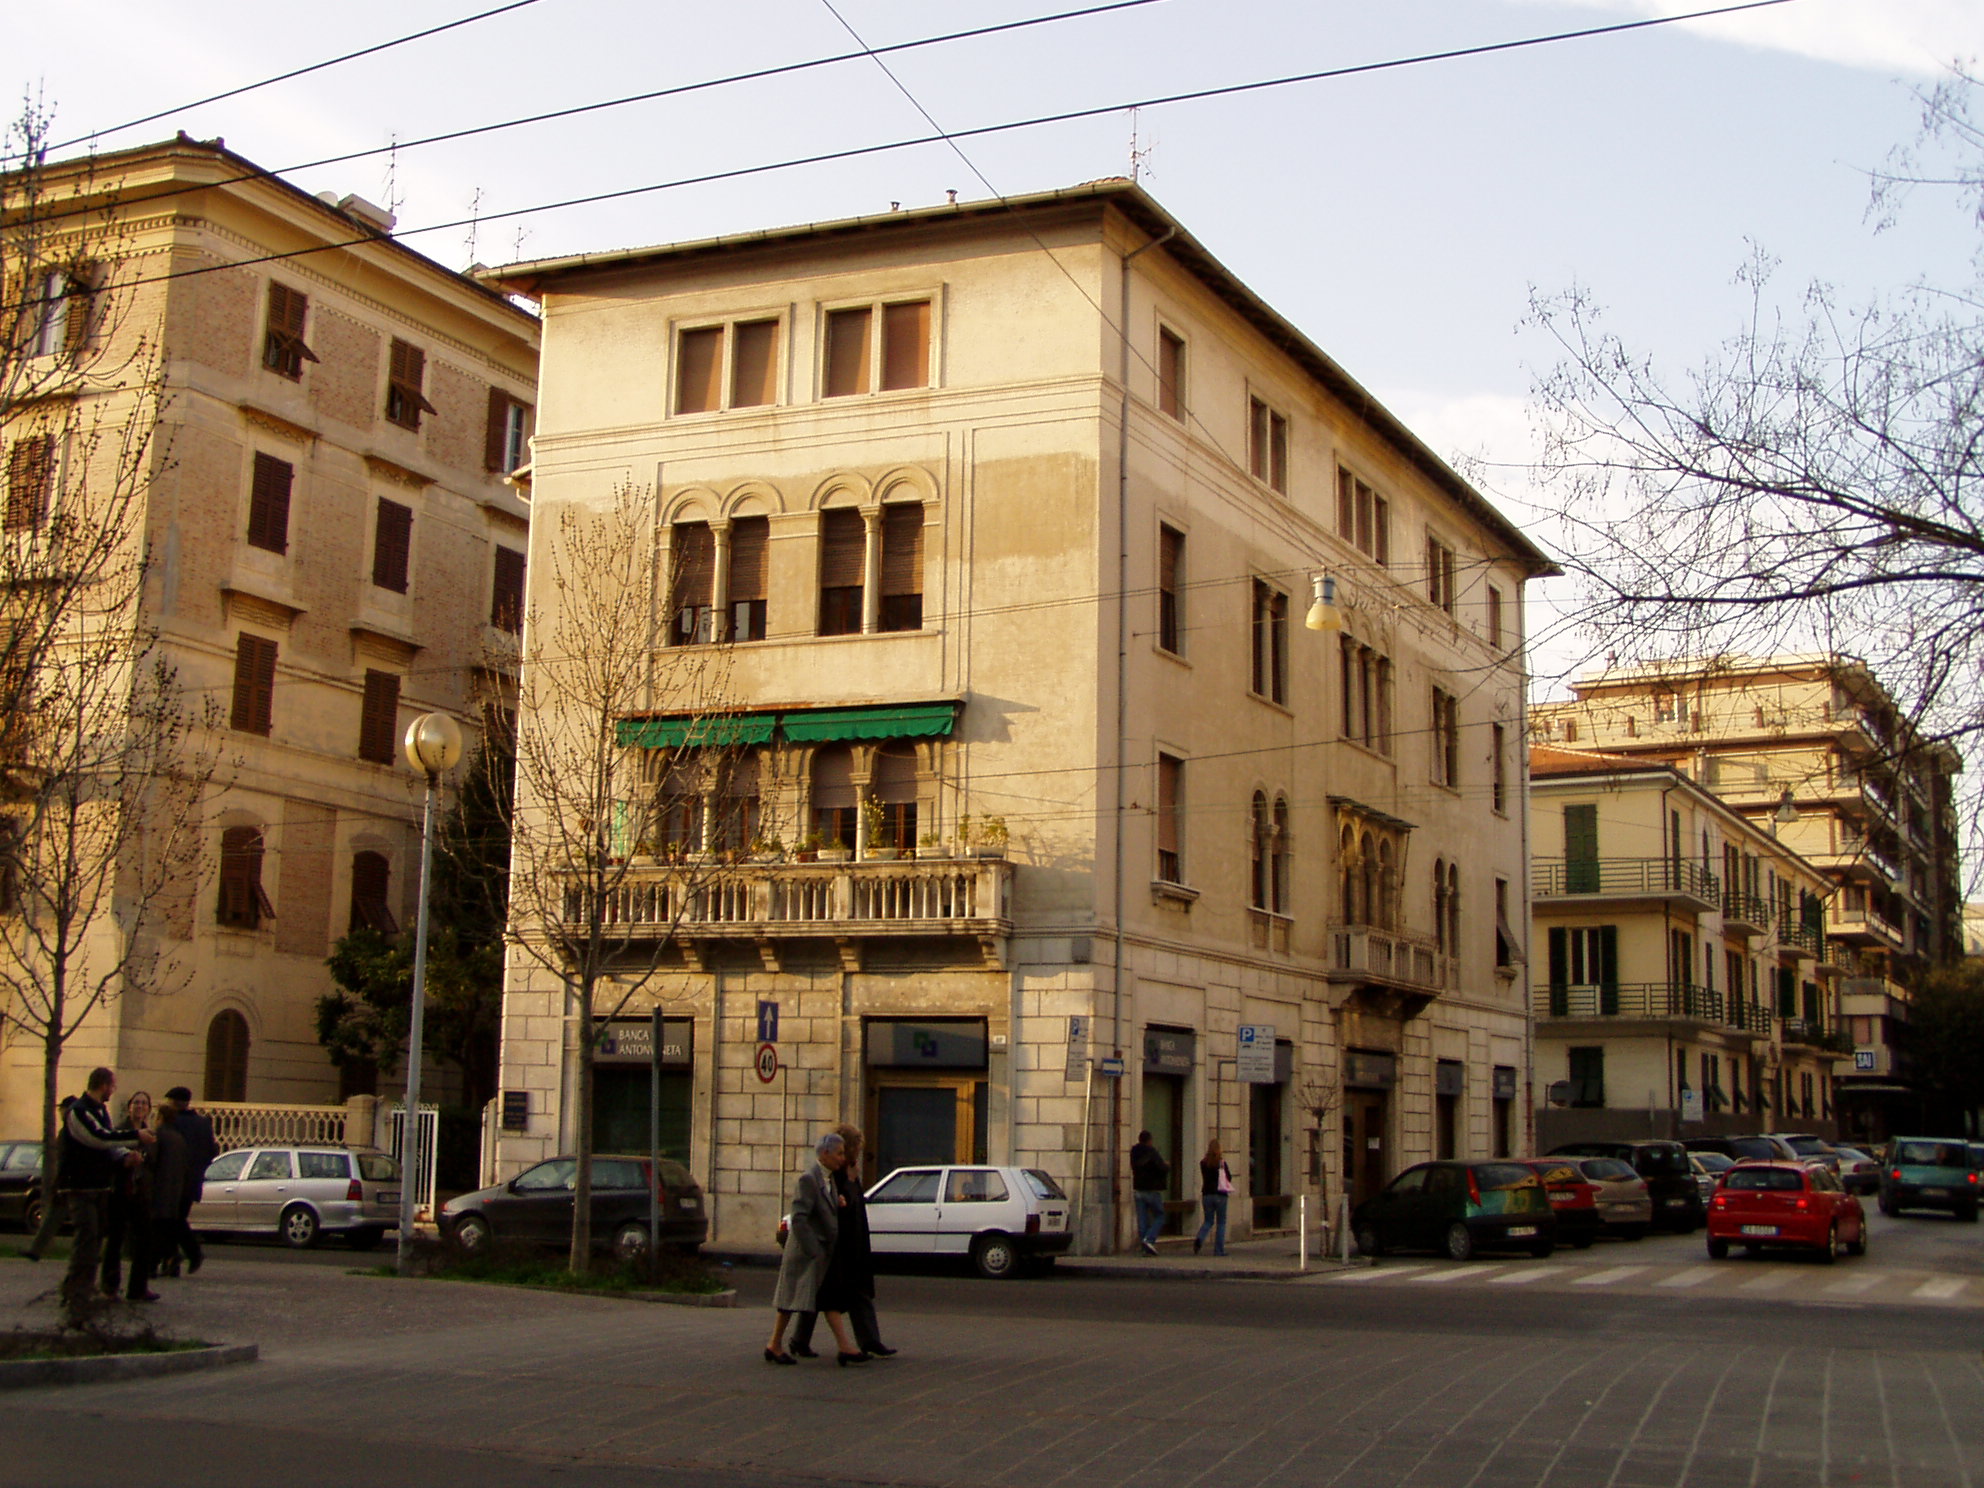 Palazzo in stile neoclassico veneziano (palazzetto) - Ancona (AN) 